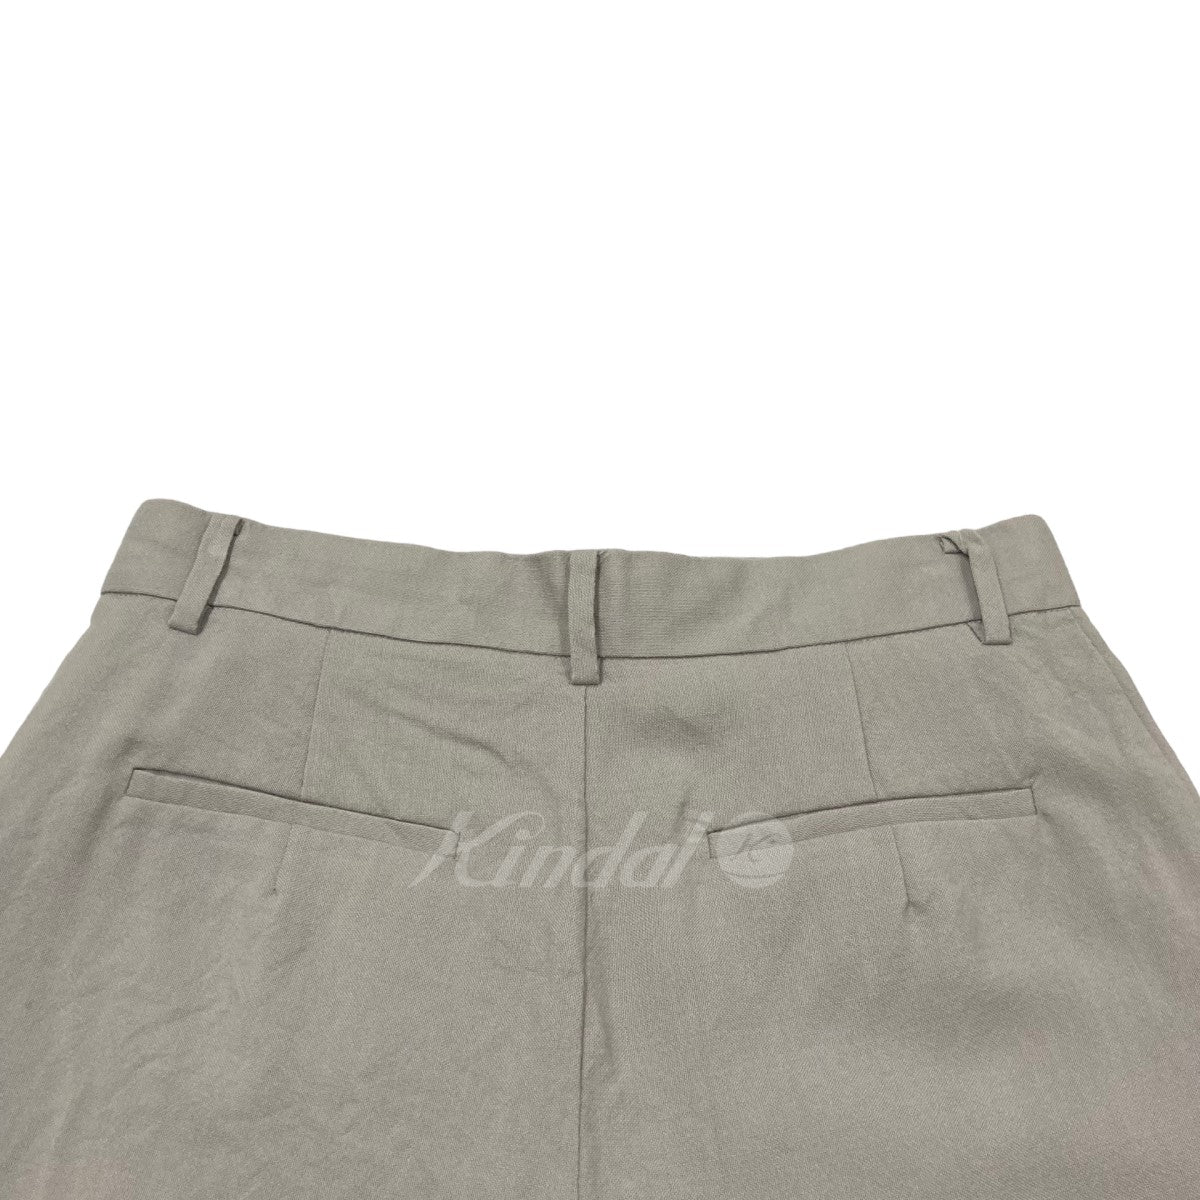 Summer Wool Trousers スラックスパンツ 25S88001